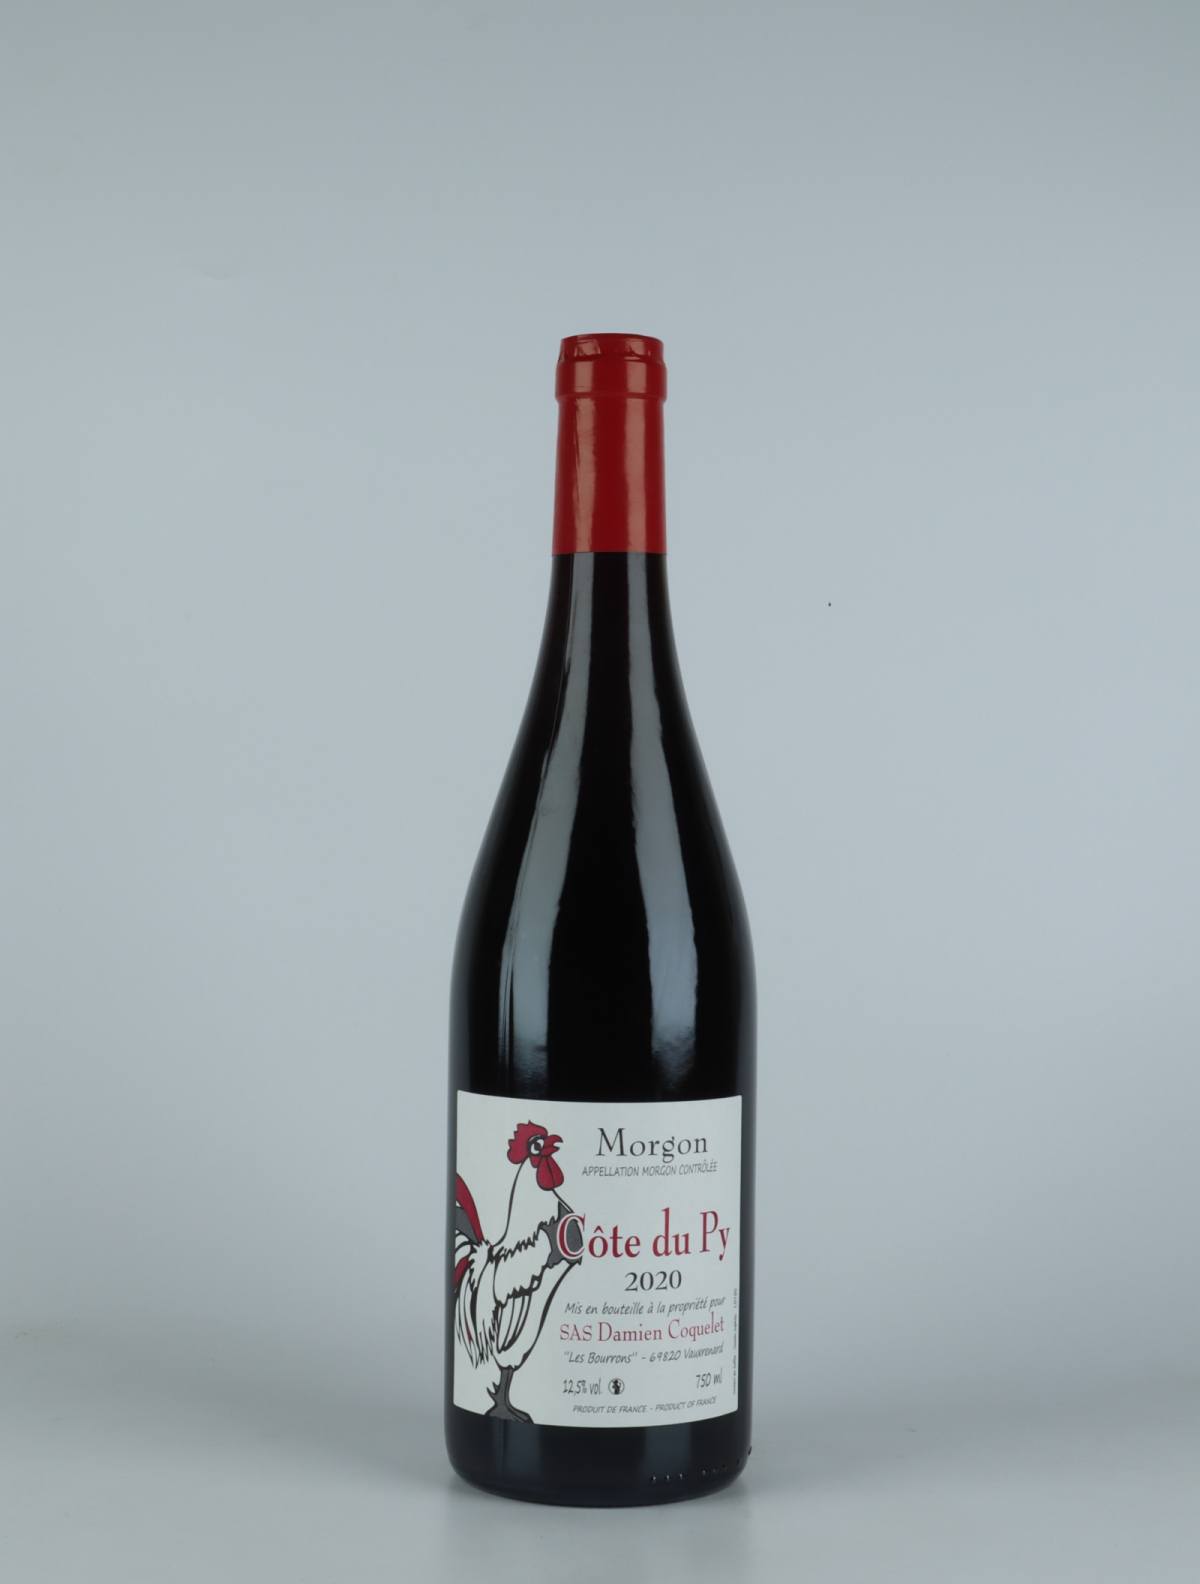 En flaske 2020 Morgon - Côte du Py Rødvin fra Damien Coquelet, Beaujolais i Frankrig